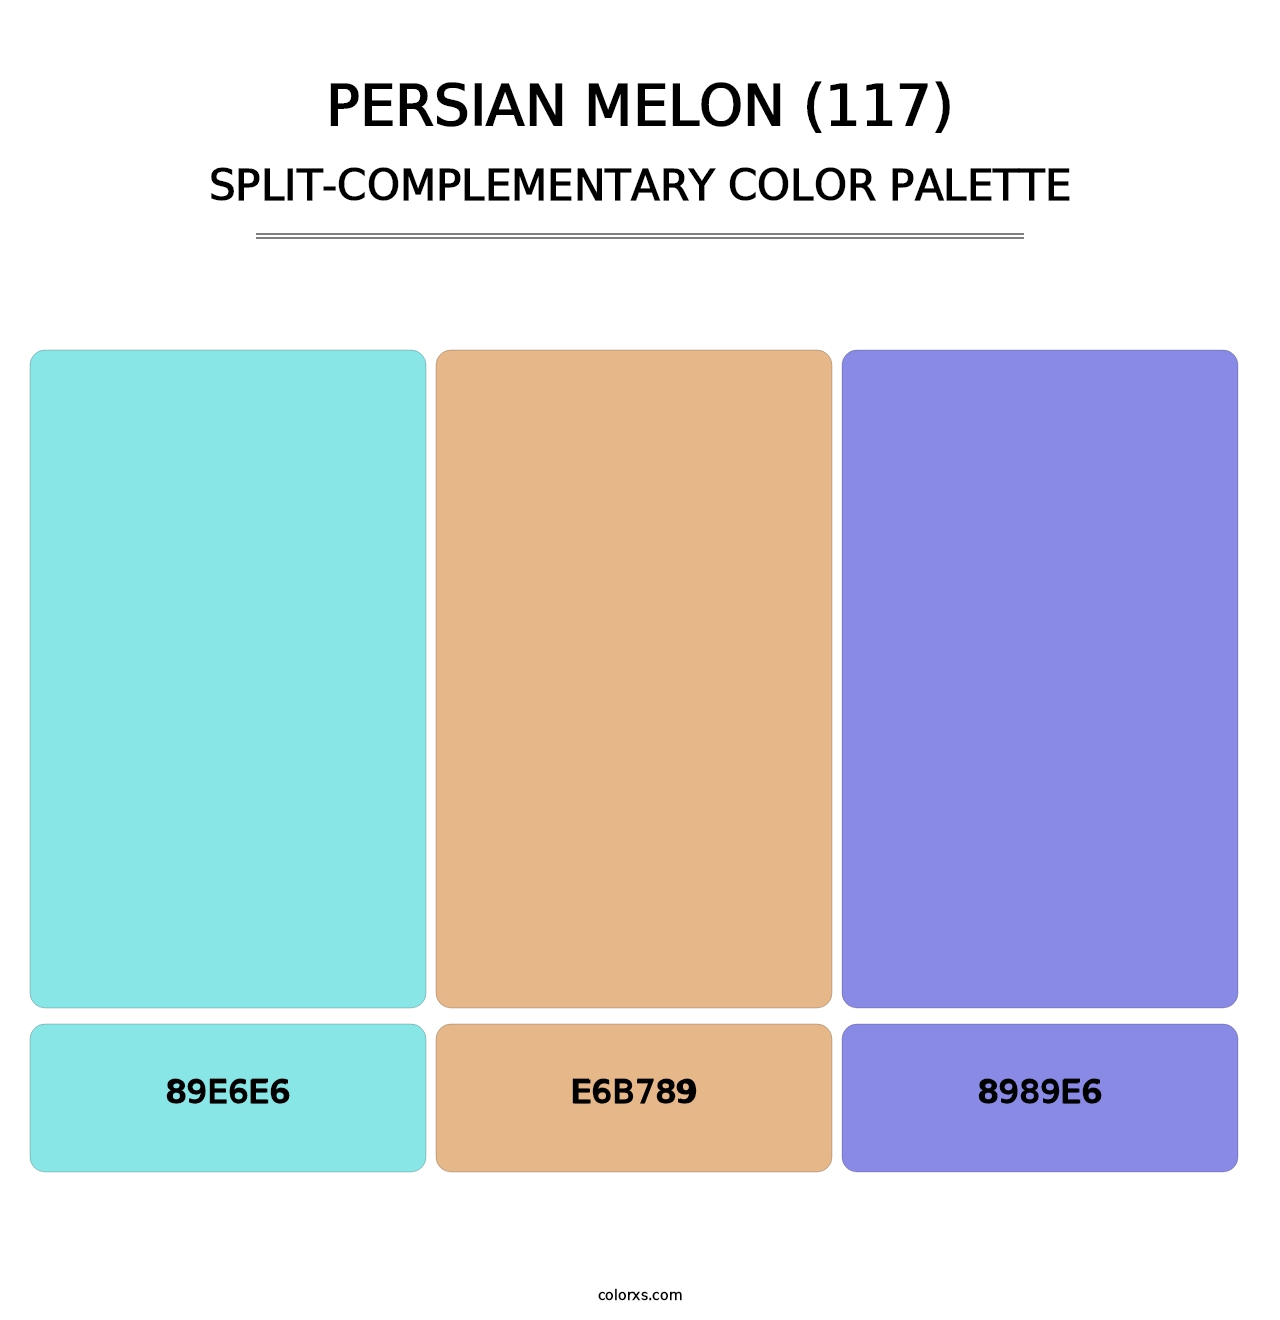 Persian Melon (117) - Split-Complementary Color Palette